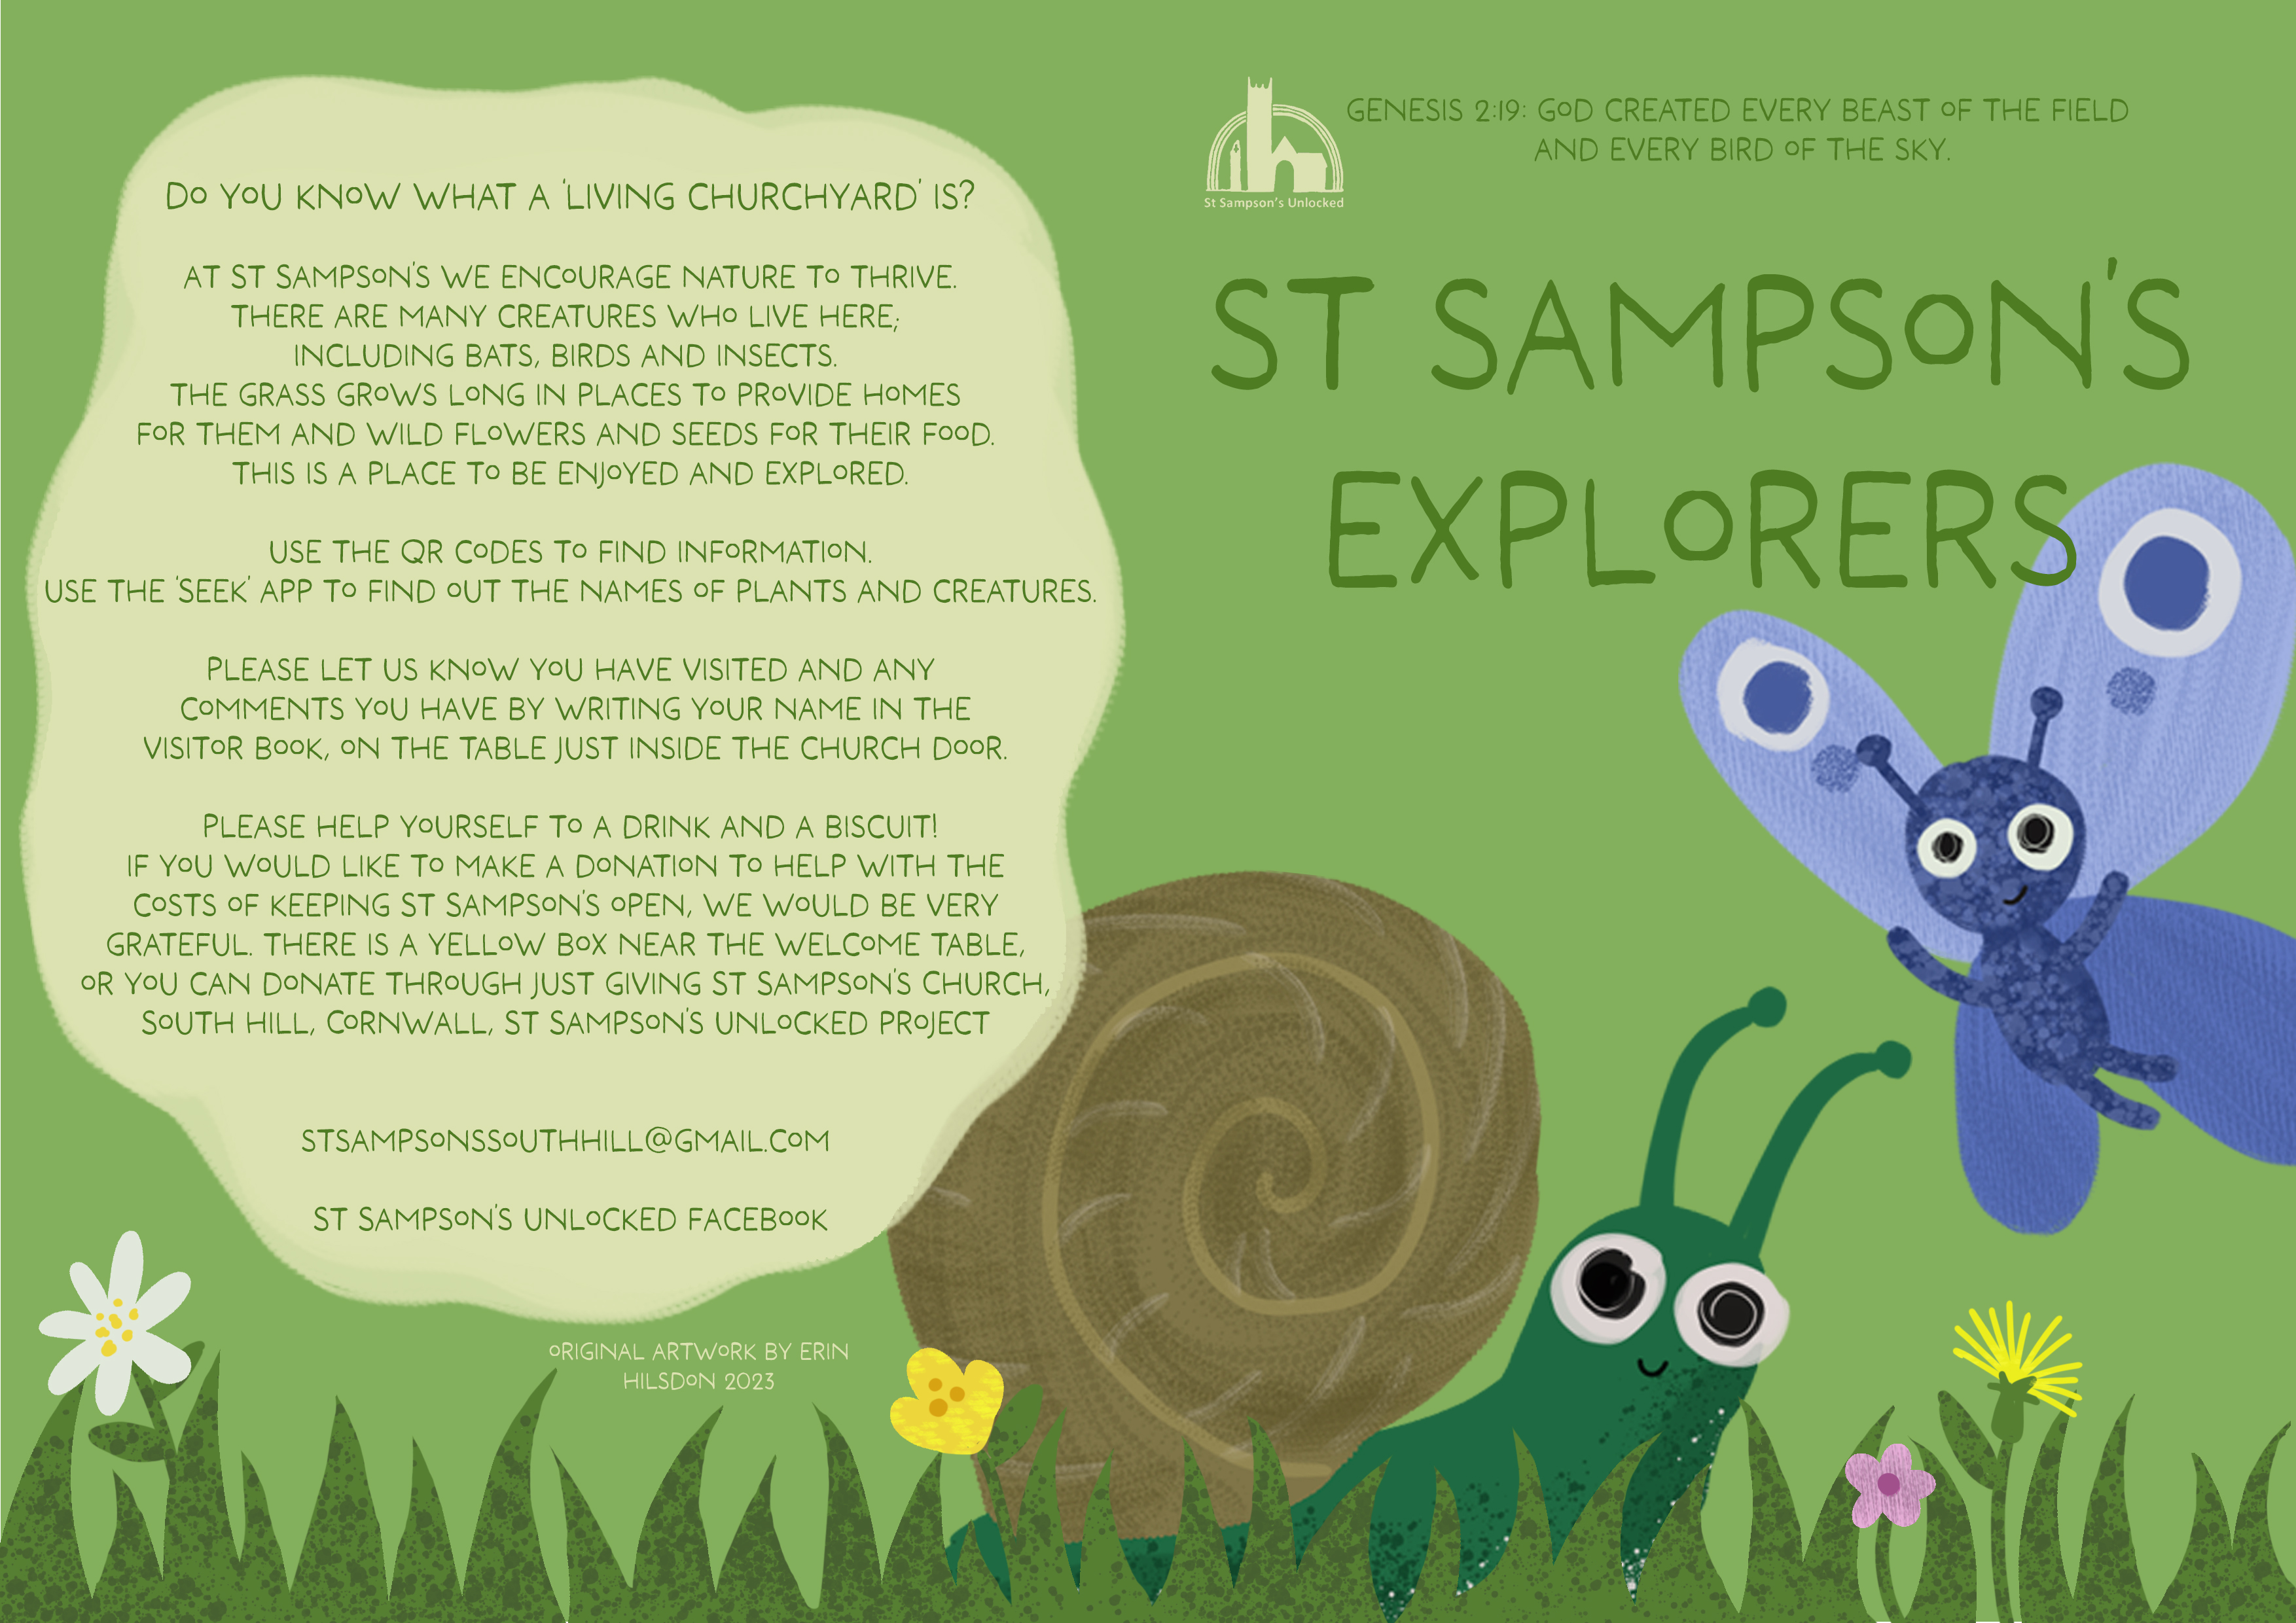 St Sampson's explorer